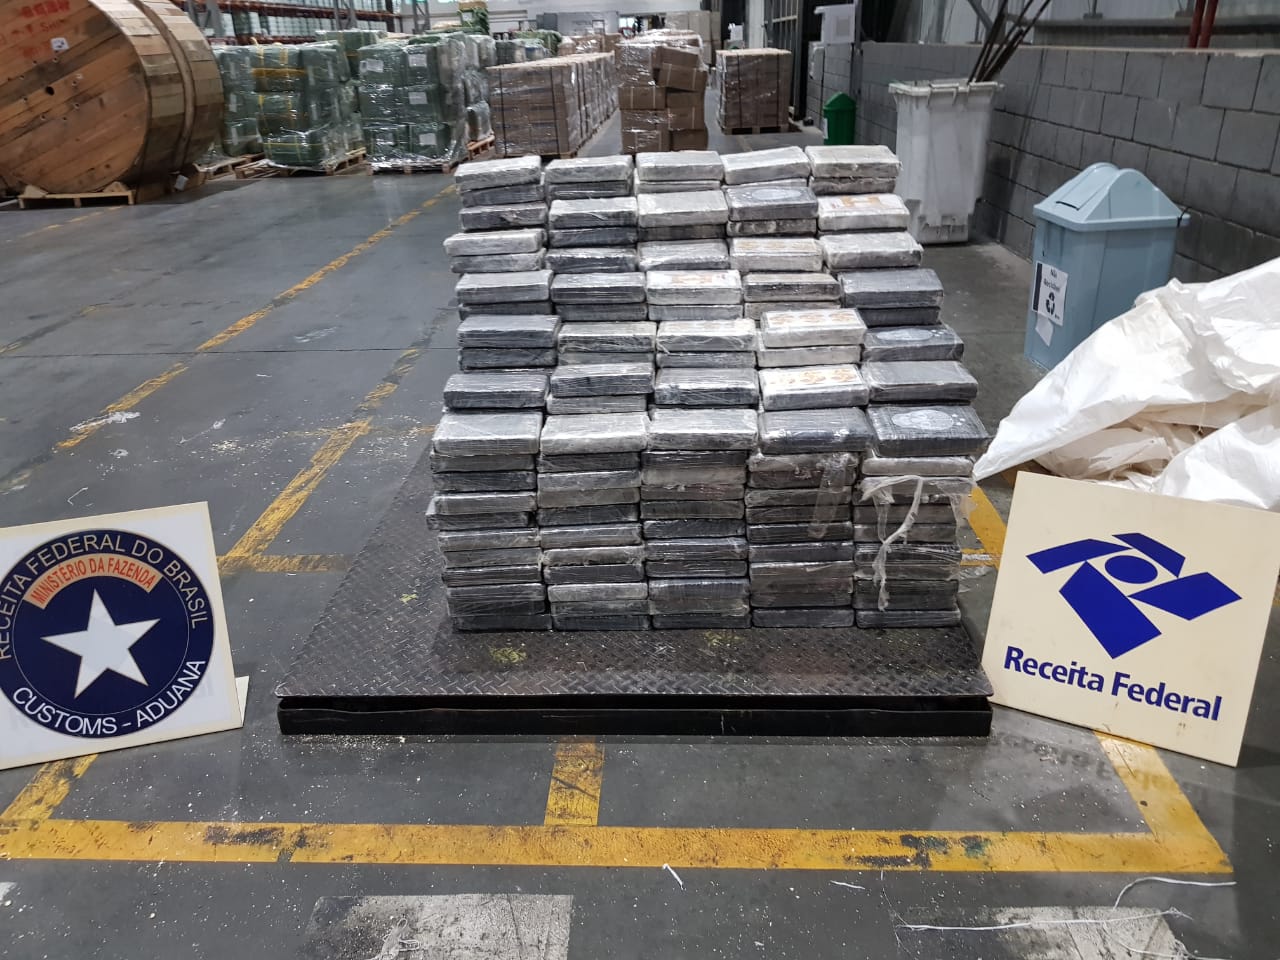  Receita Federal apreende 608 quilos de cocaína escondida em carga de feijão